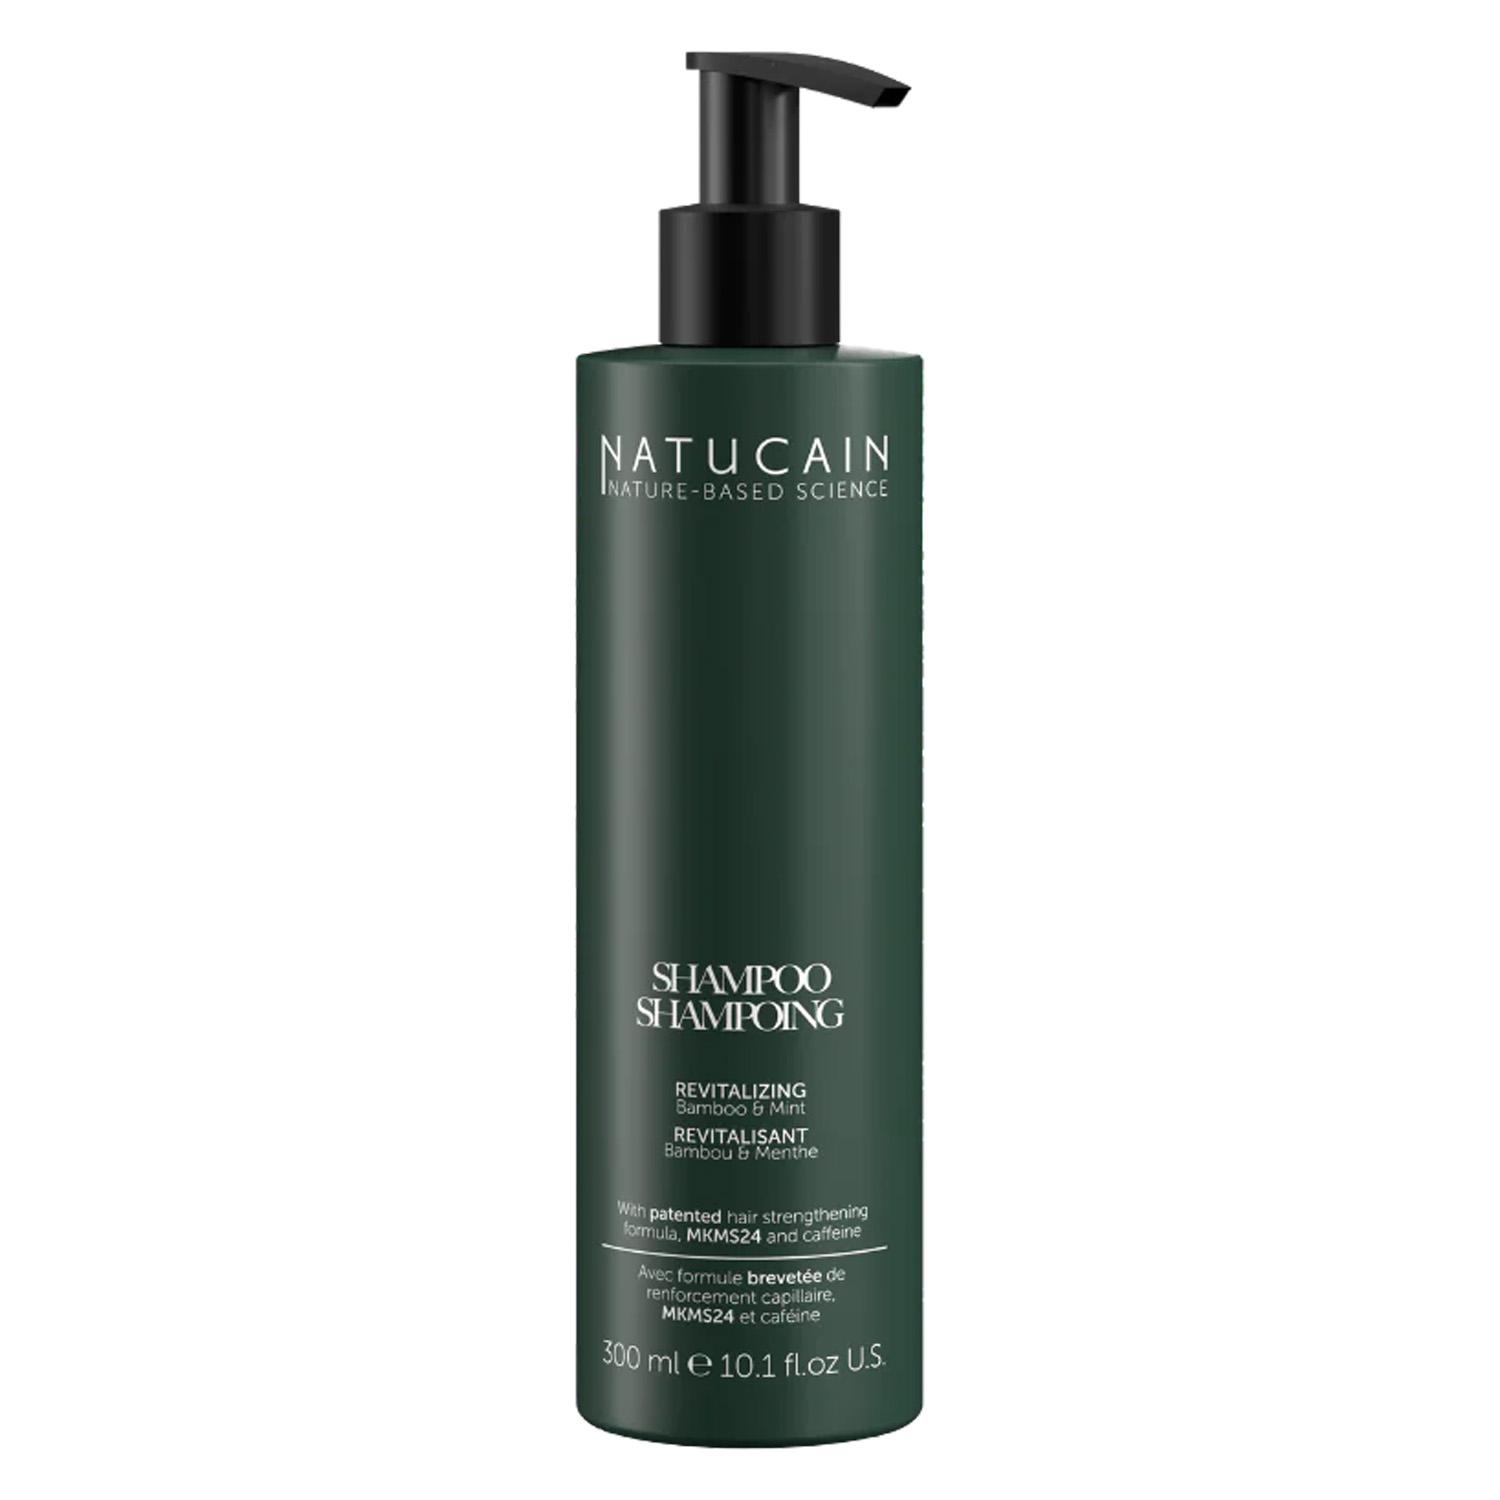 NATUCAIN - Revitalizing Shampoo